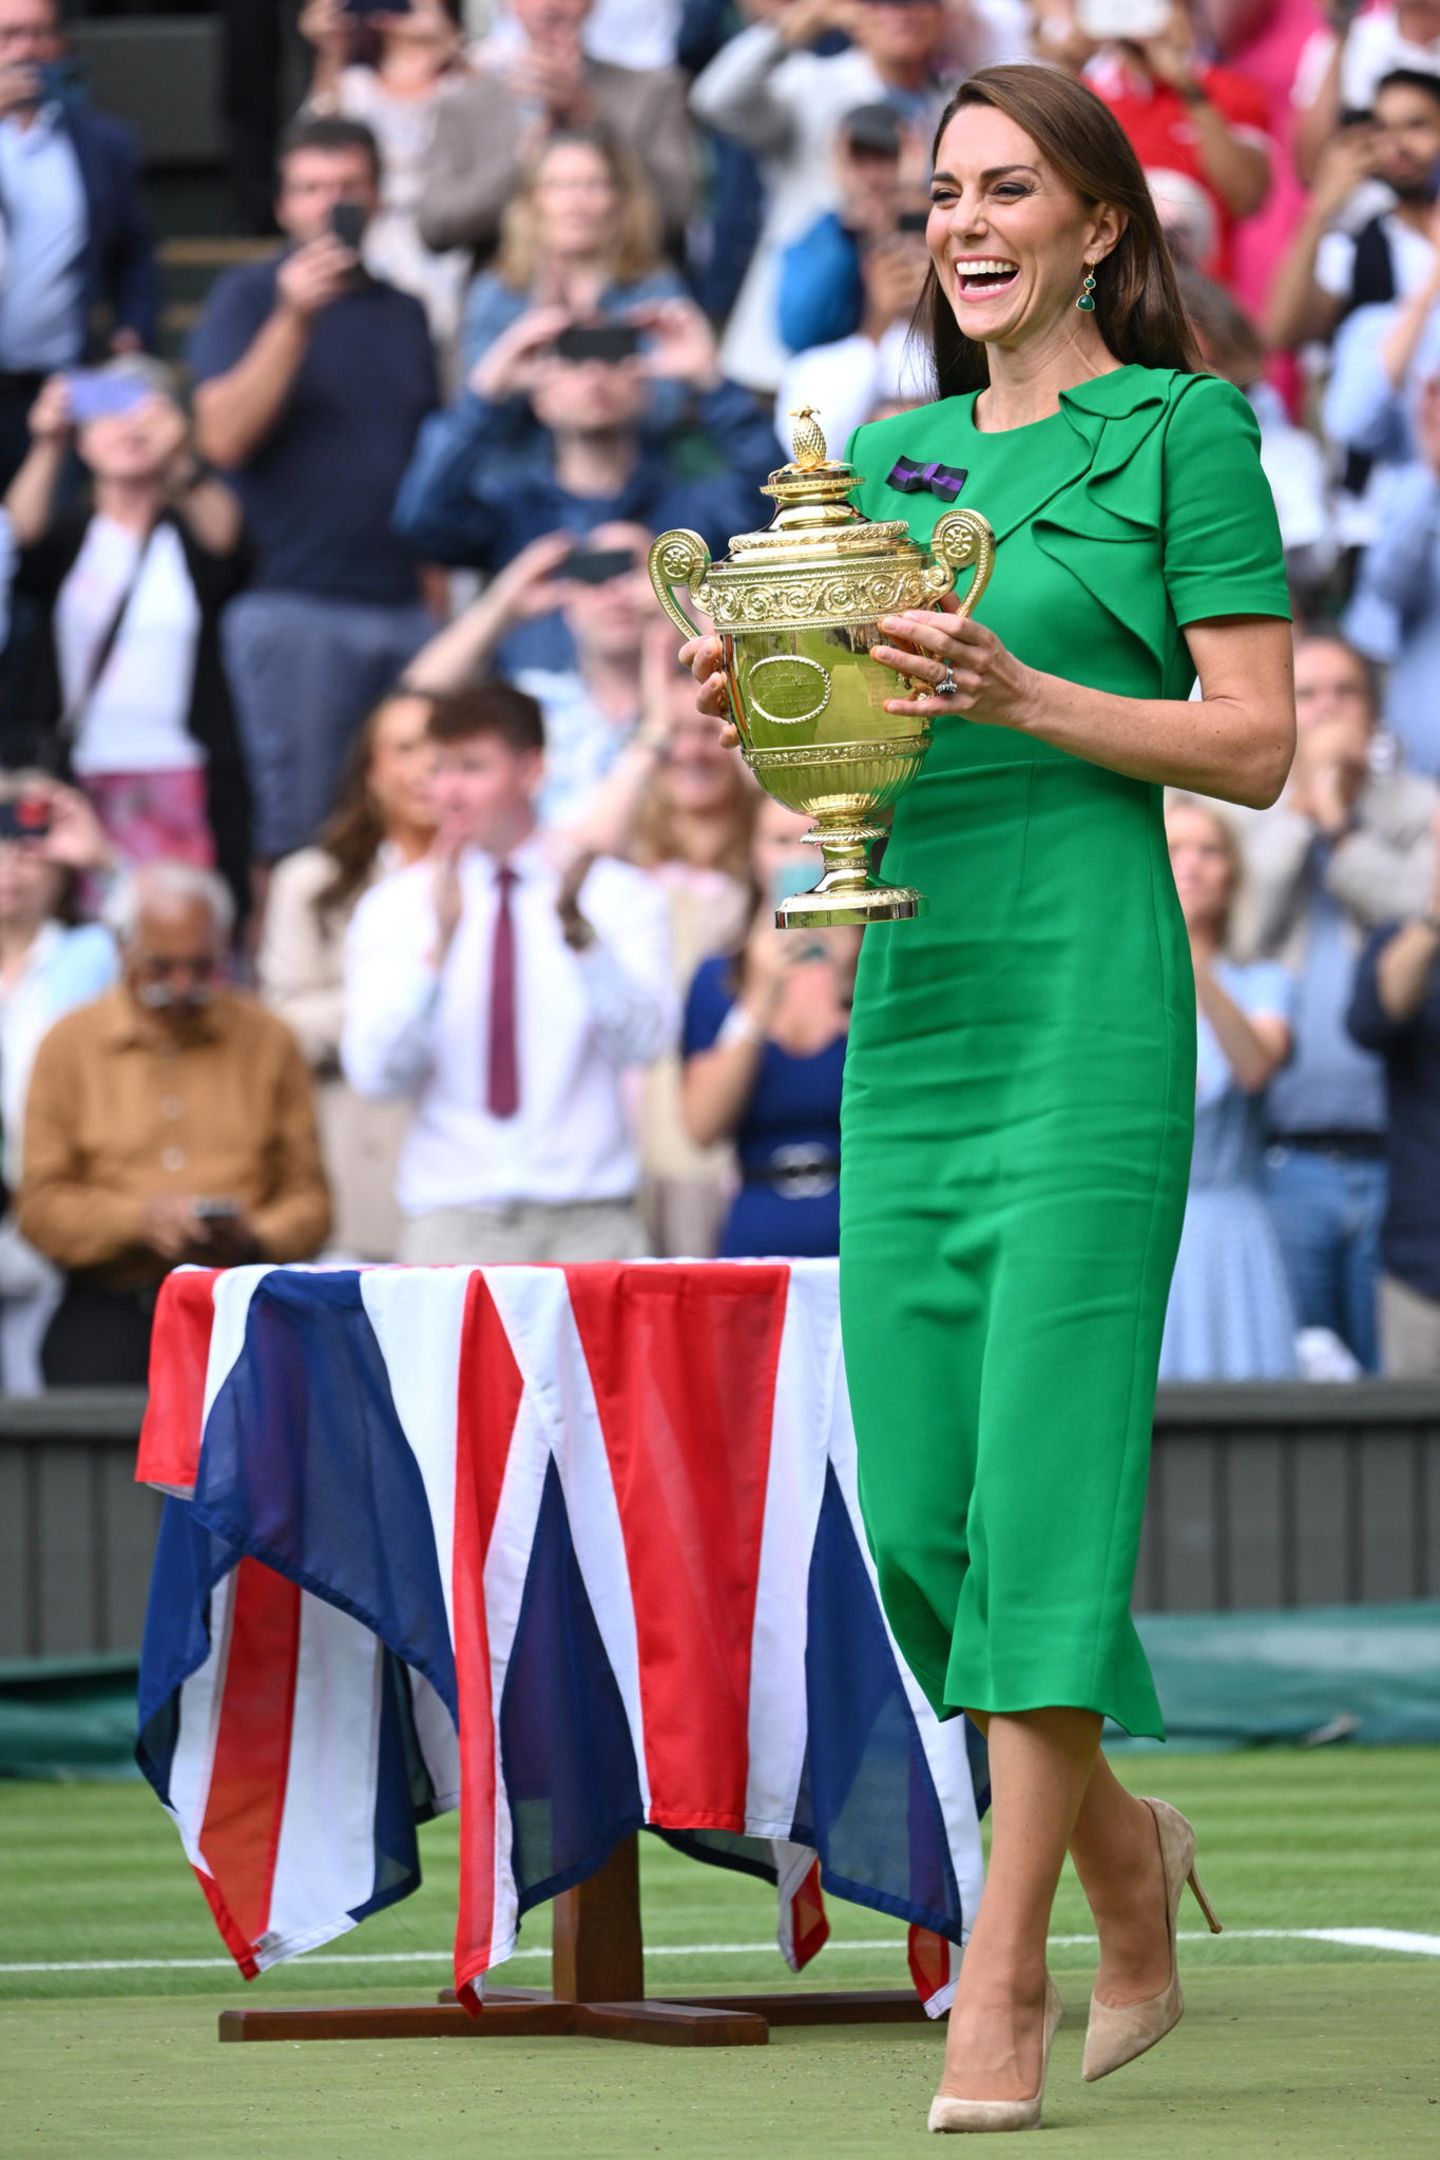 Fröhlich strahlend überreicht Catherine den Siegerpokal an den Gewinner des diesjährigen Men's Final in Wimbledon, Carlos Alcaraz. Neben dem ansteckenden Lächeln der Princess of Wales und dem großen goldenen Pokal in ihren Händen, fällt Fans jedoch vor allem eines ins Auge: die großen Falten auf ihrem grünen Roland-Mouret-Kleid. Auch wenn die Farbe und der Etui-Schnitt mit kleinen Rüschen überzeugen, die Tücken des hohen Viskose-Anteils ihres neuen Kleides können sie nicht ganz wett machen. 